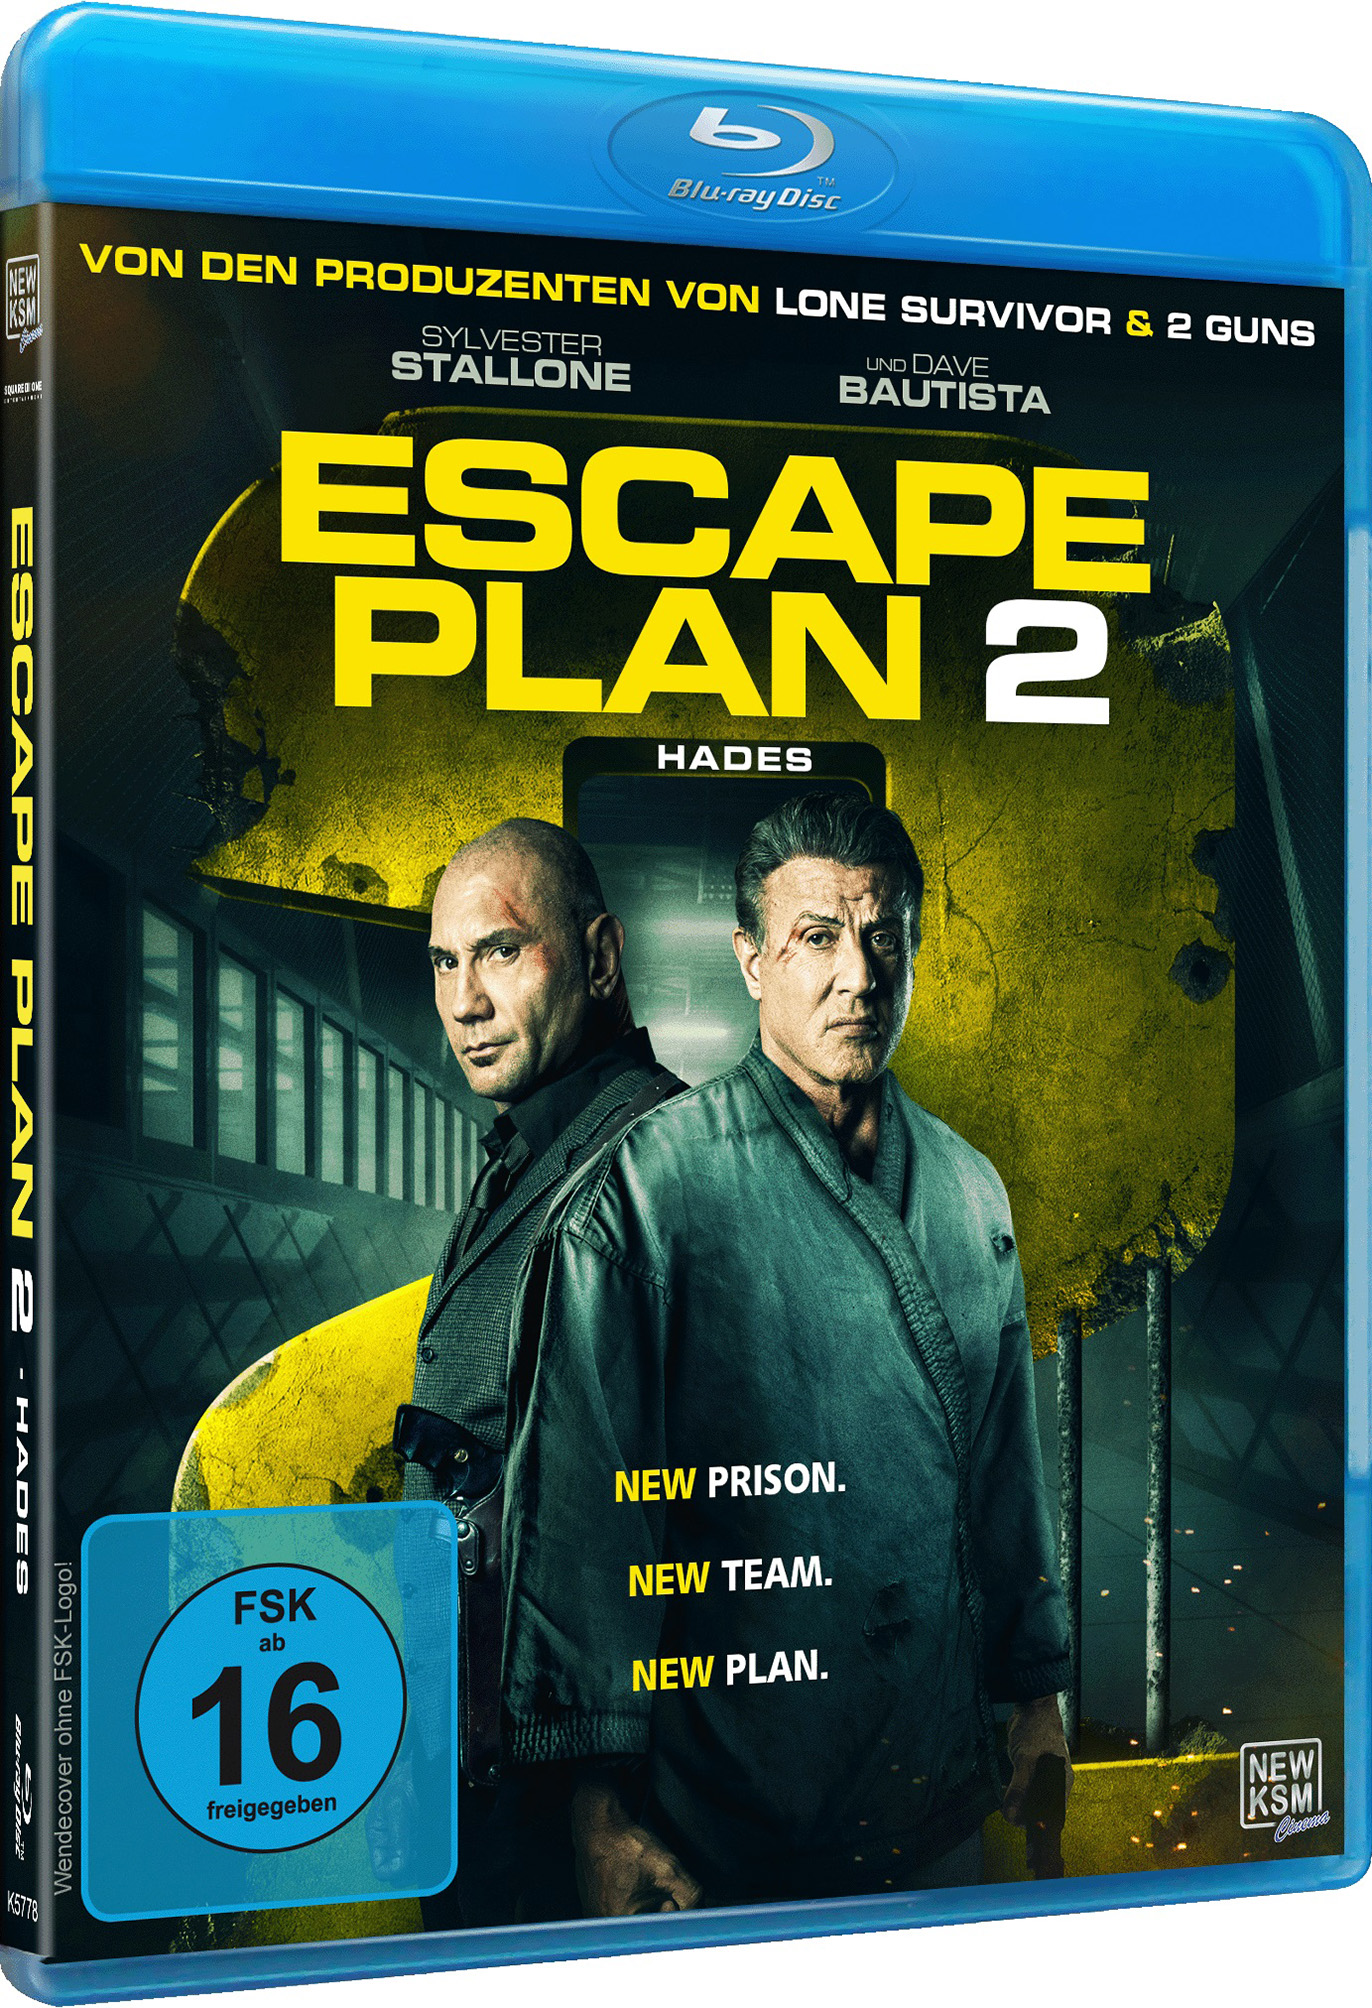 Escape Plan 2 Hades (Blu-ray) Image 2